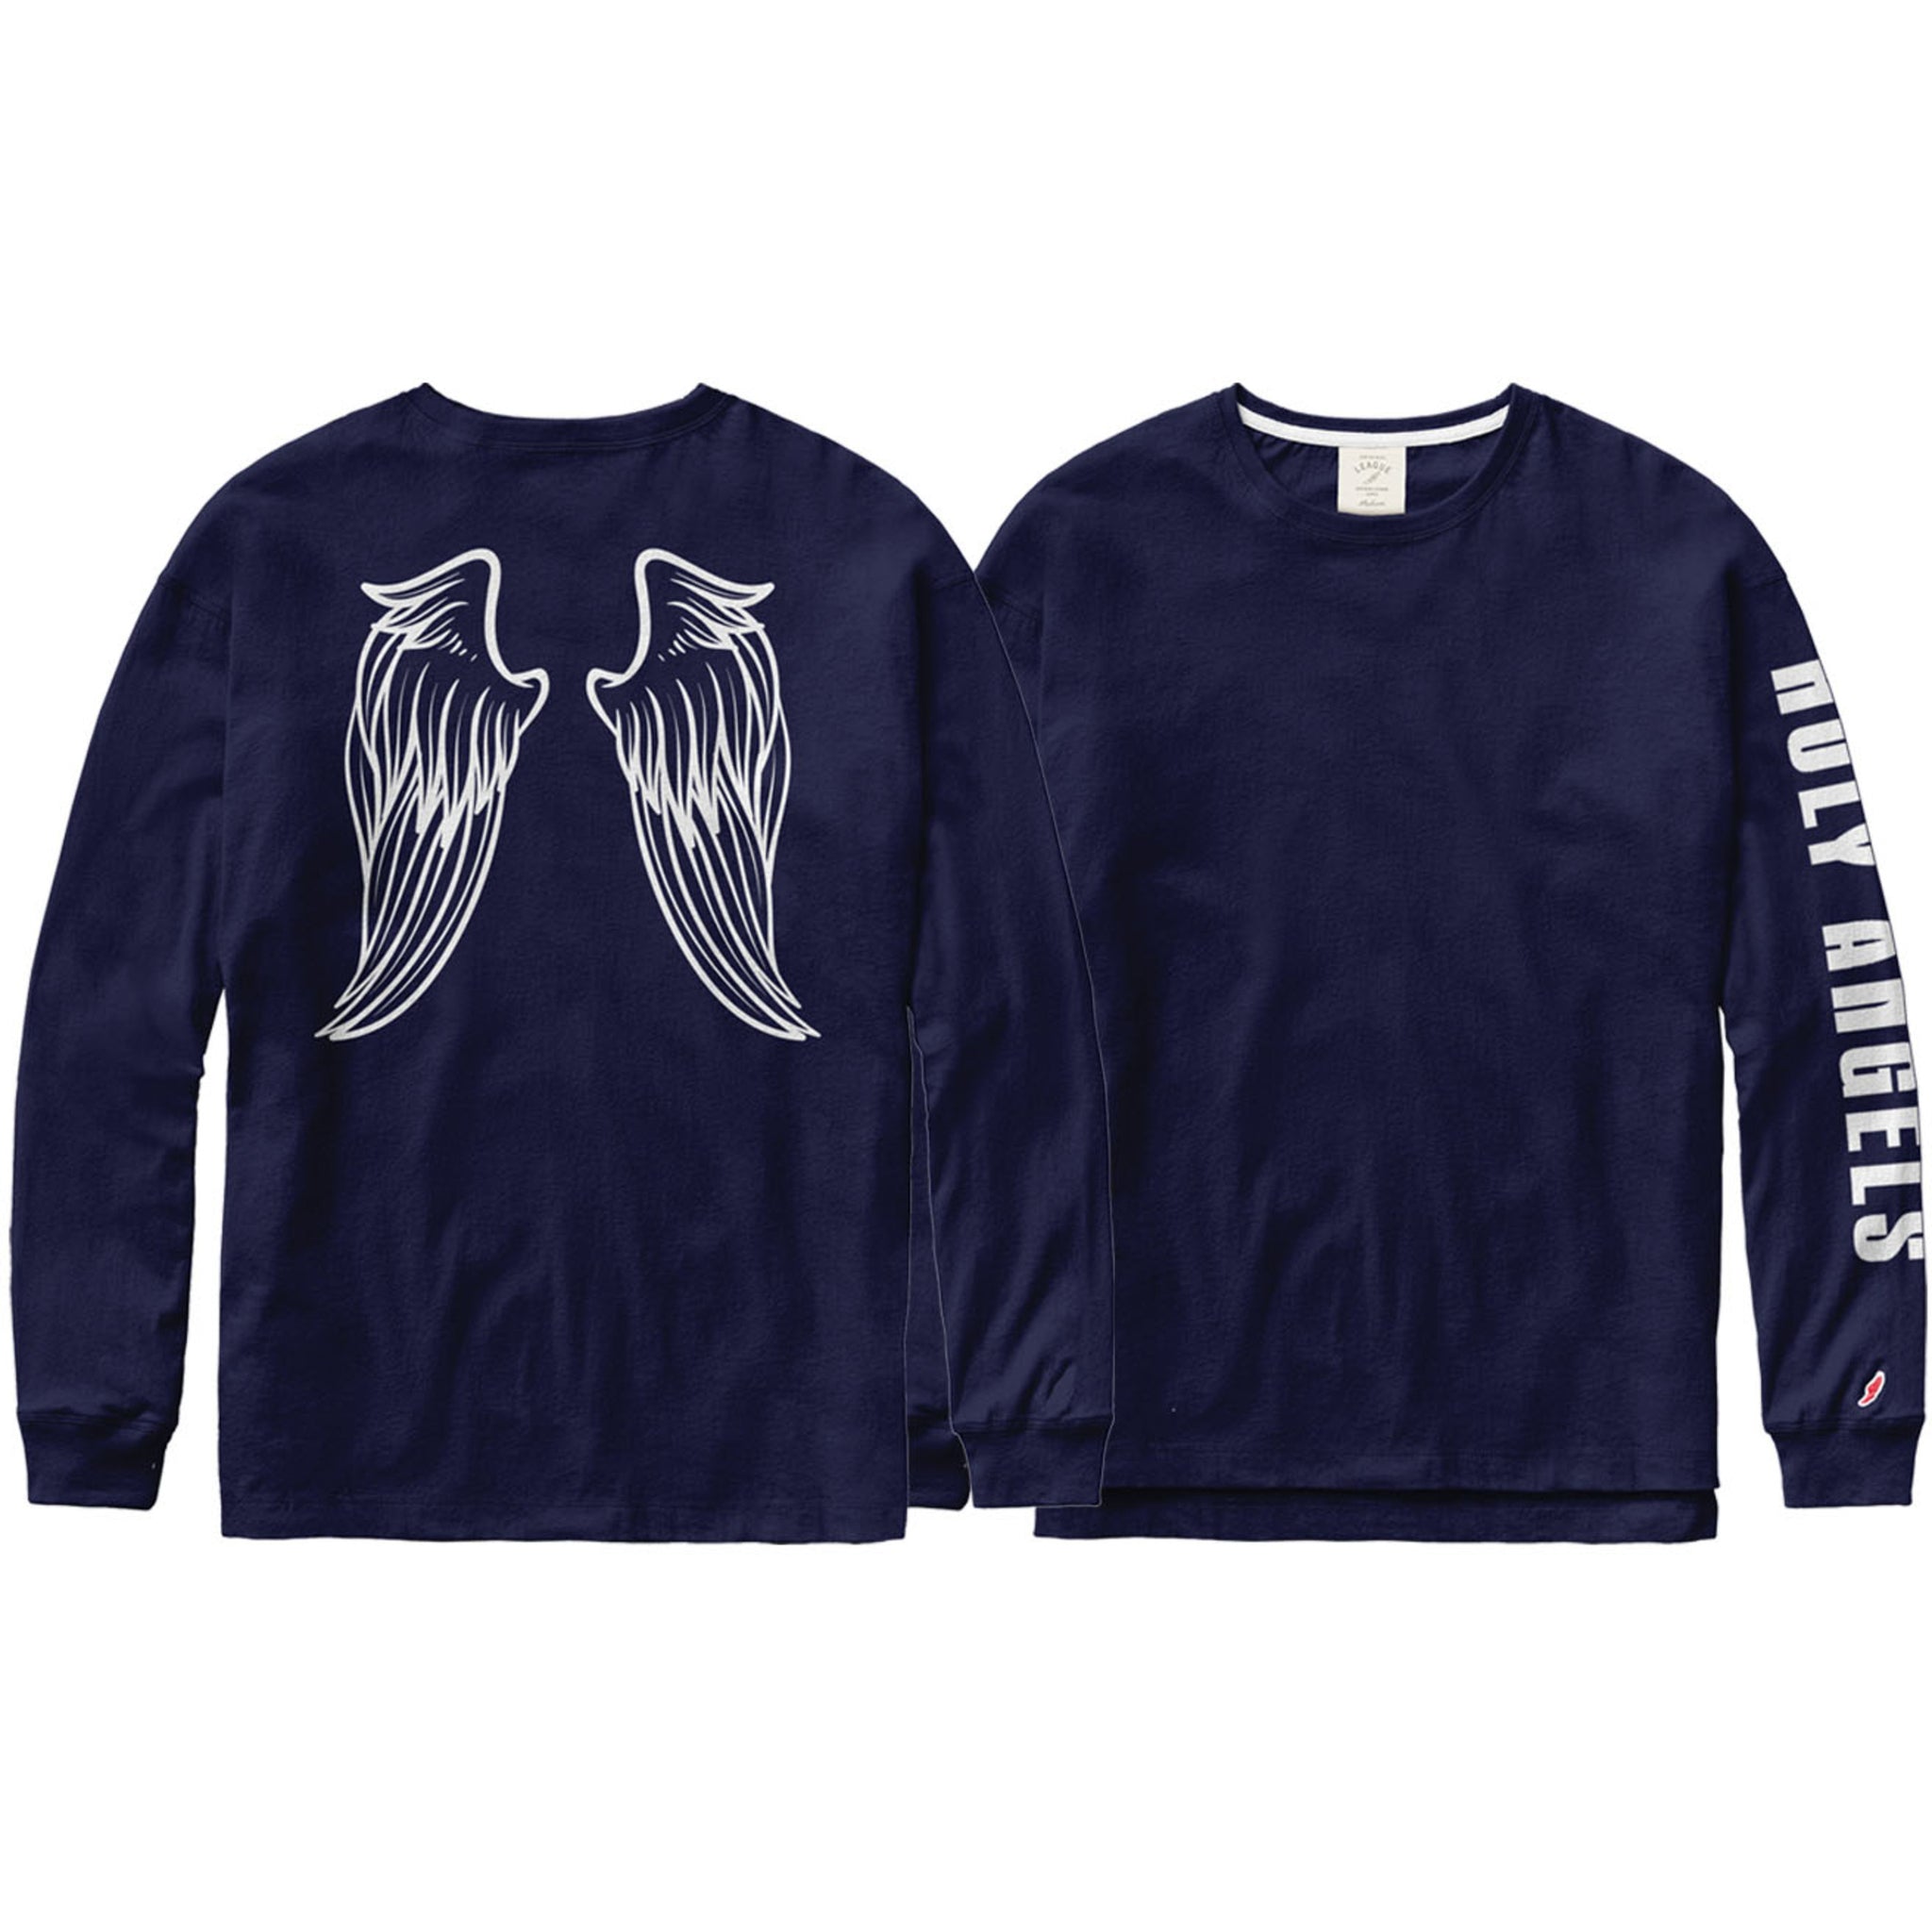 angel wings tshirt